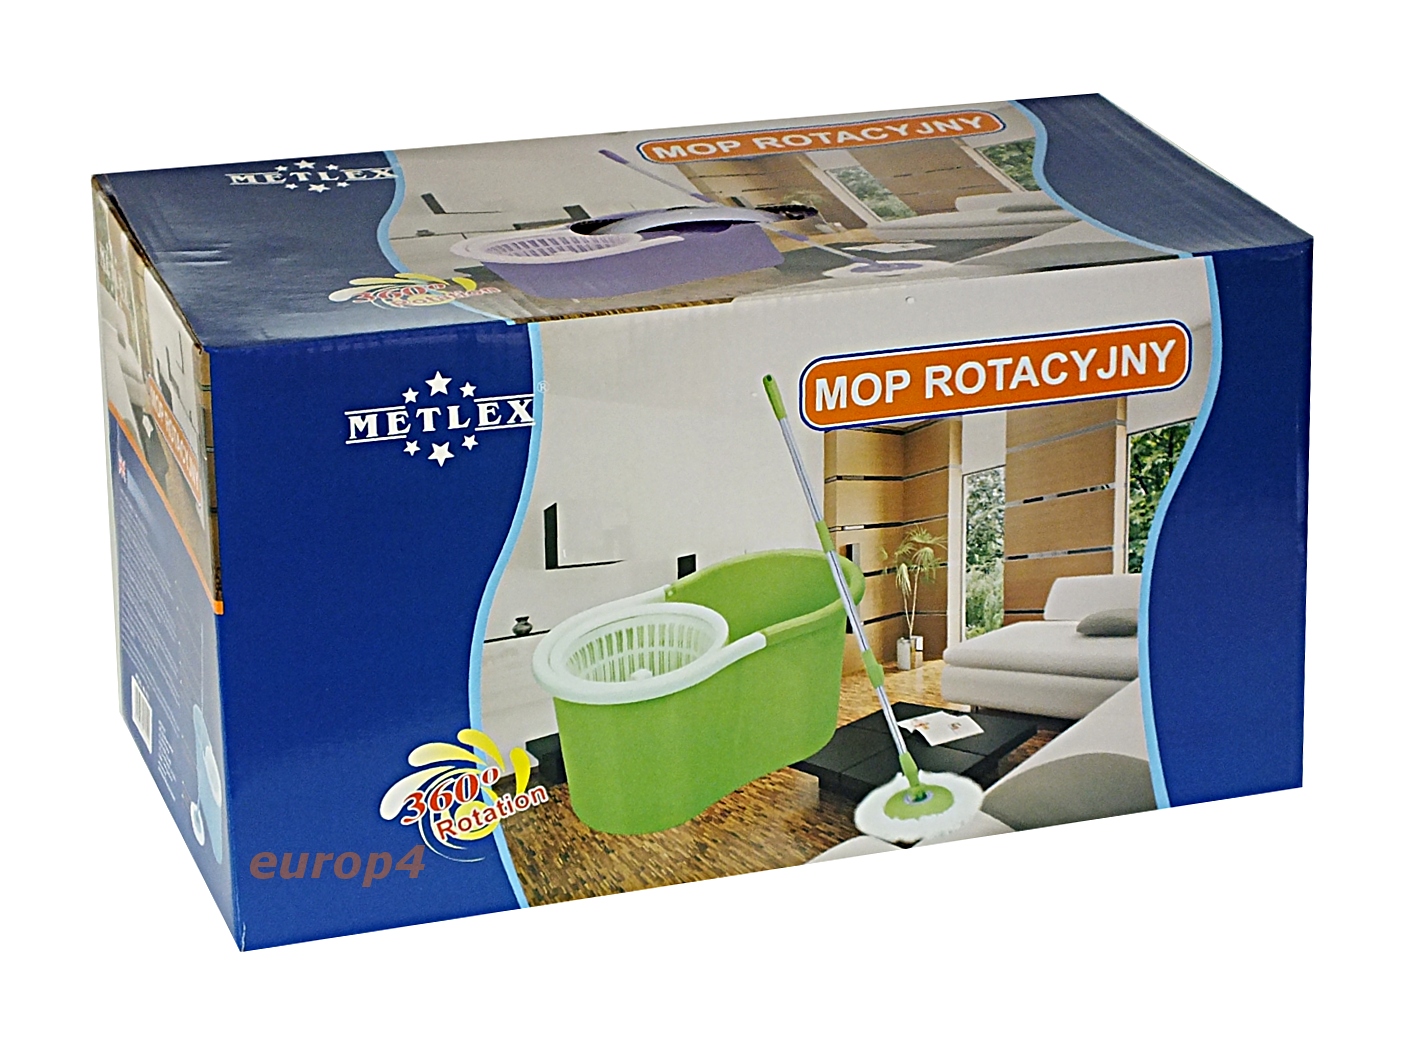 Mop rotacyjny Metlex MX 9050 - oryginalne pudełko